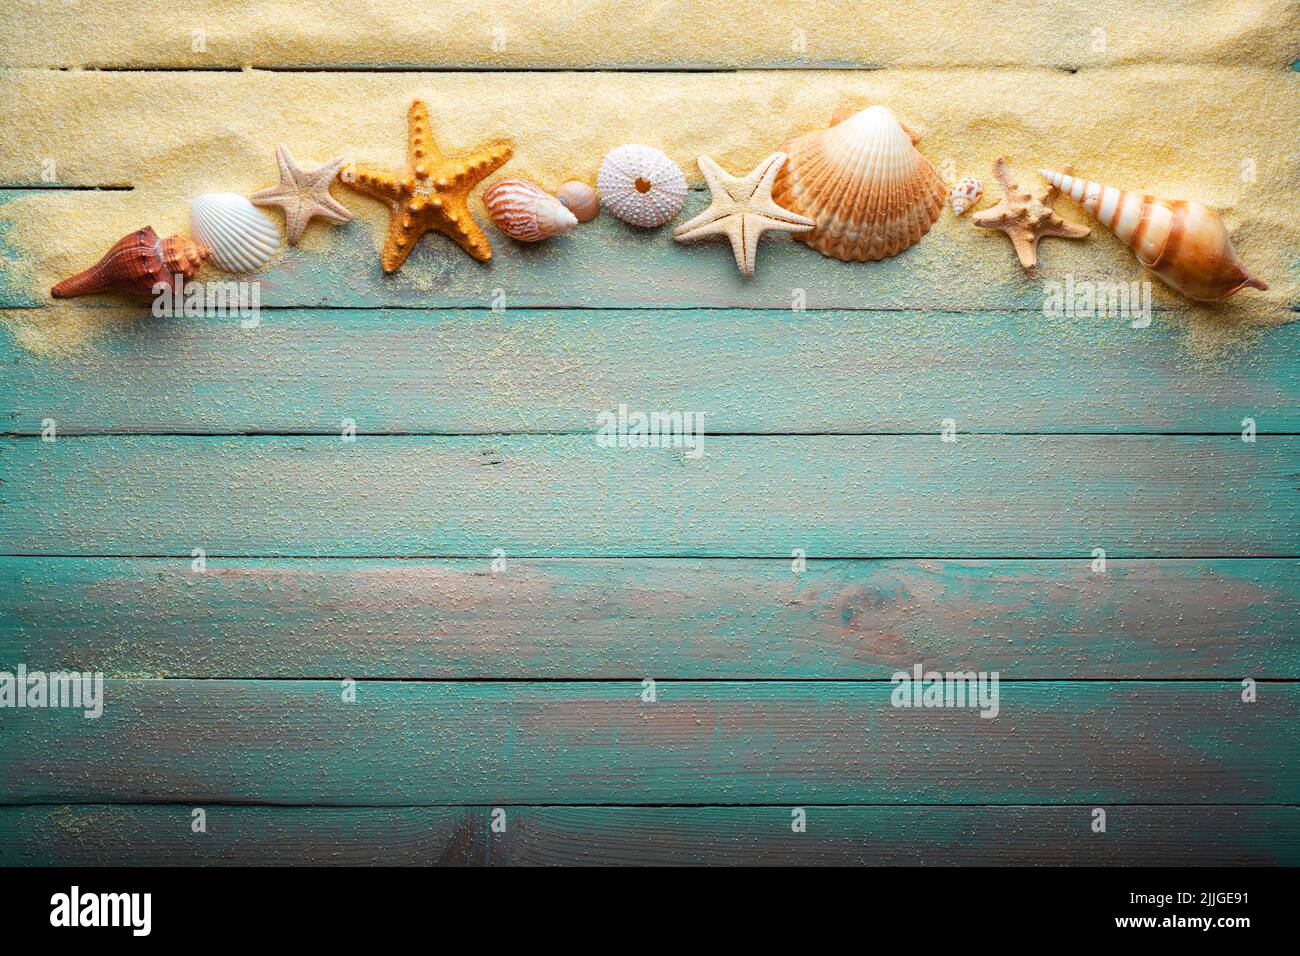 Concepto de vacaciones y verano con estrellas de mar y conchas sobre una mesa de madera turquesa con arena Foto de stock